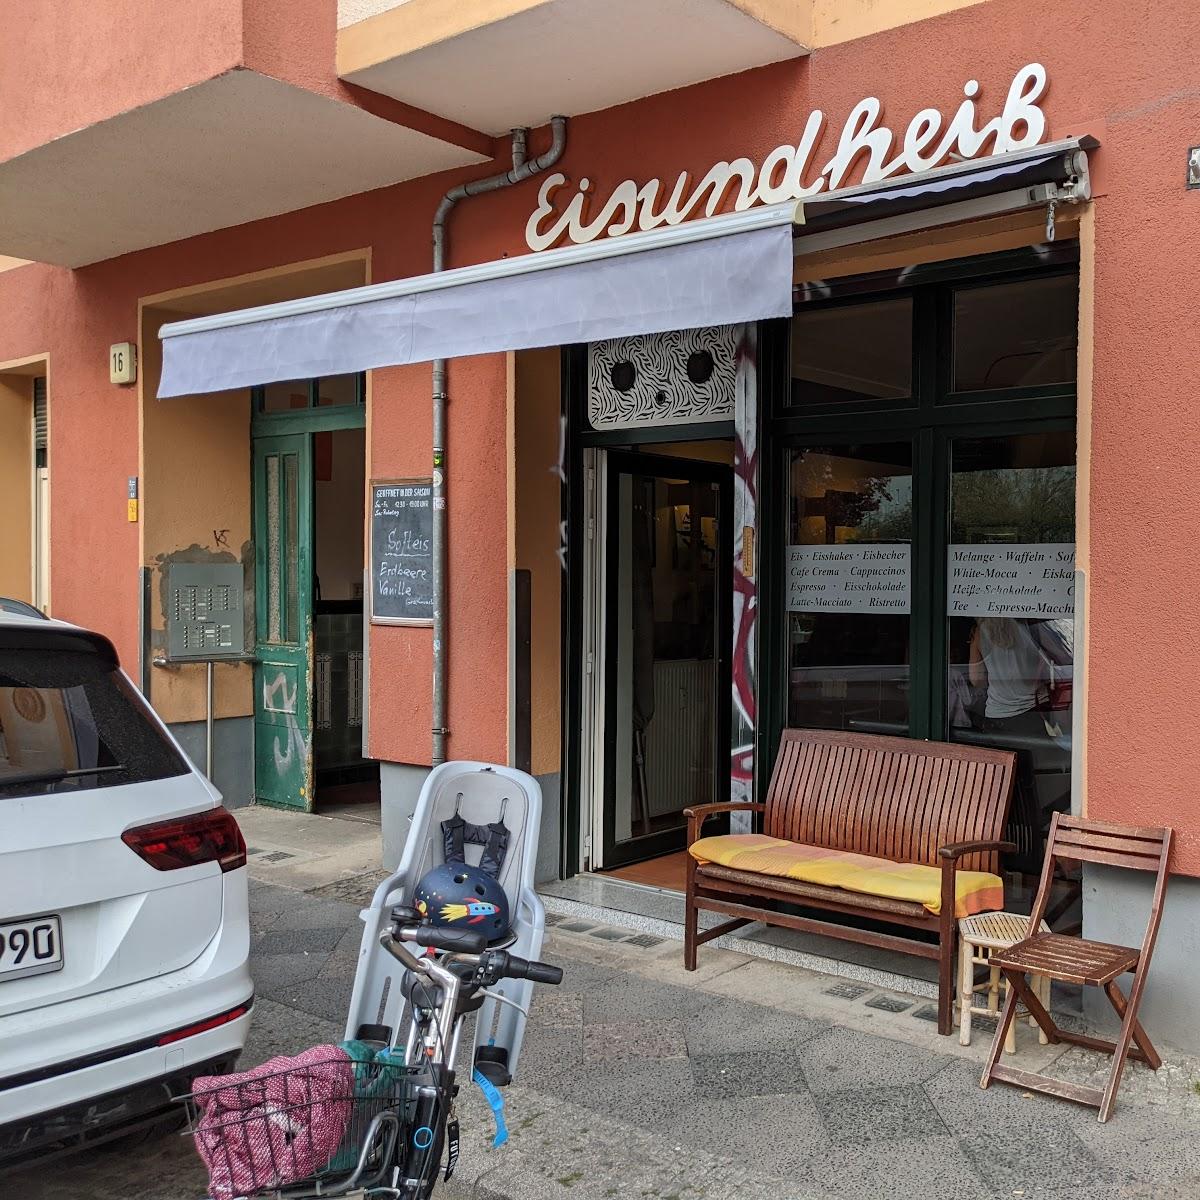 Restaurant "Eis und Heiß" in Berlin